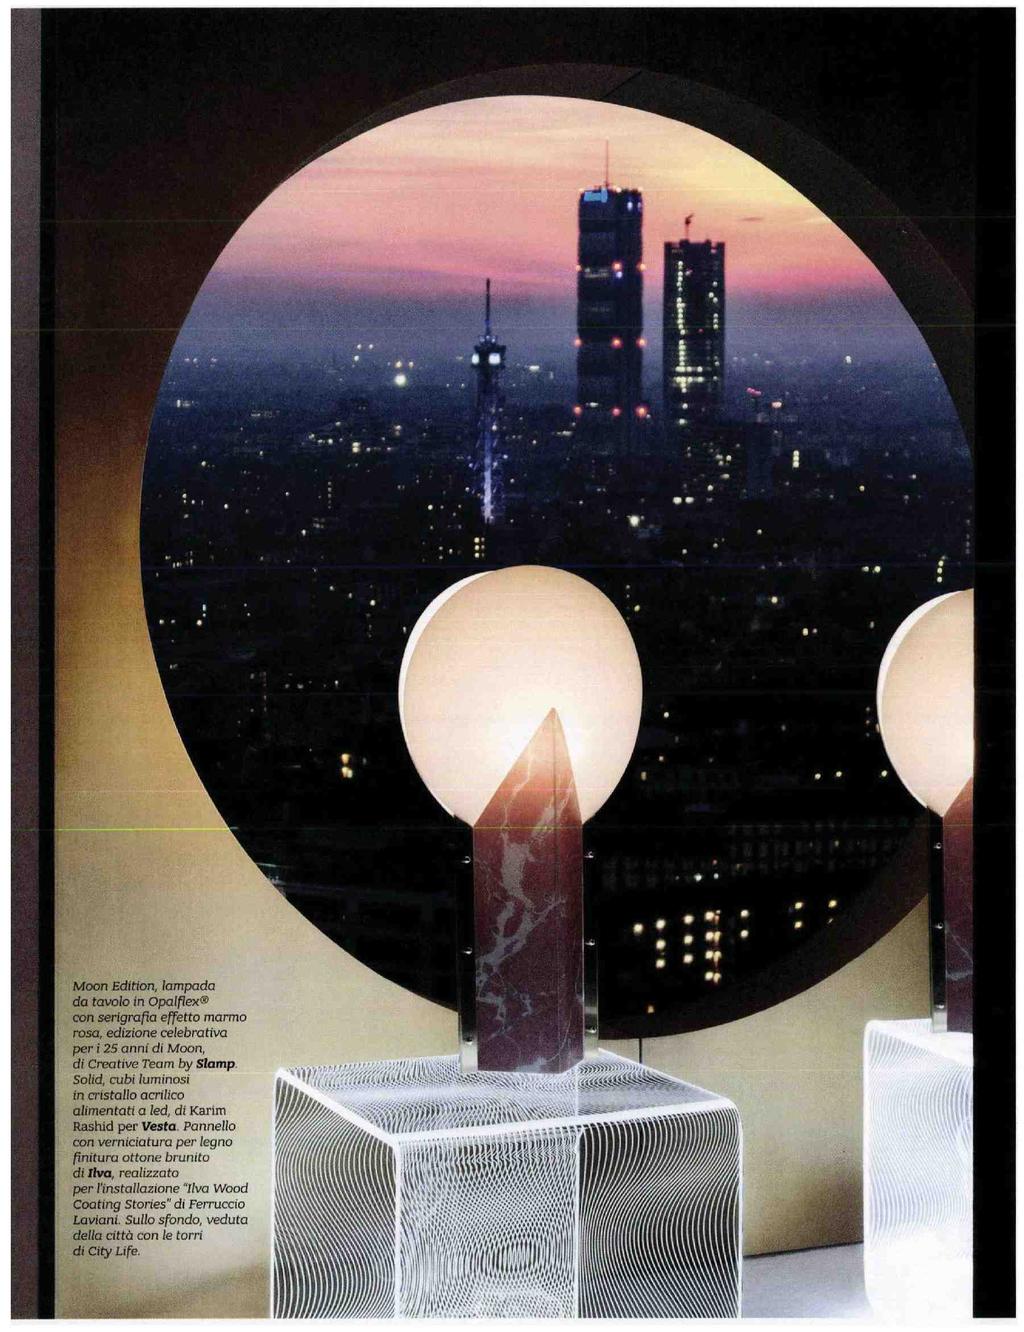 Moon Edition, lampada da tavolo in Opalflex con serigrafia effetto marmo rosa, edizione celebrativa per i25 anni di Moon, di Creative Team bytspmleavs Slamp Solid, cubi luminosi in cristallo acrilico